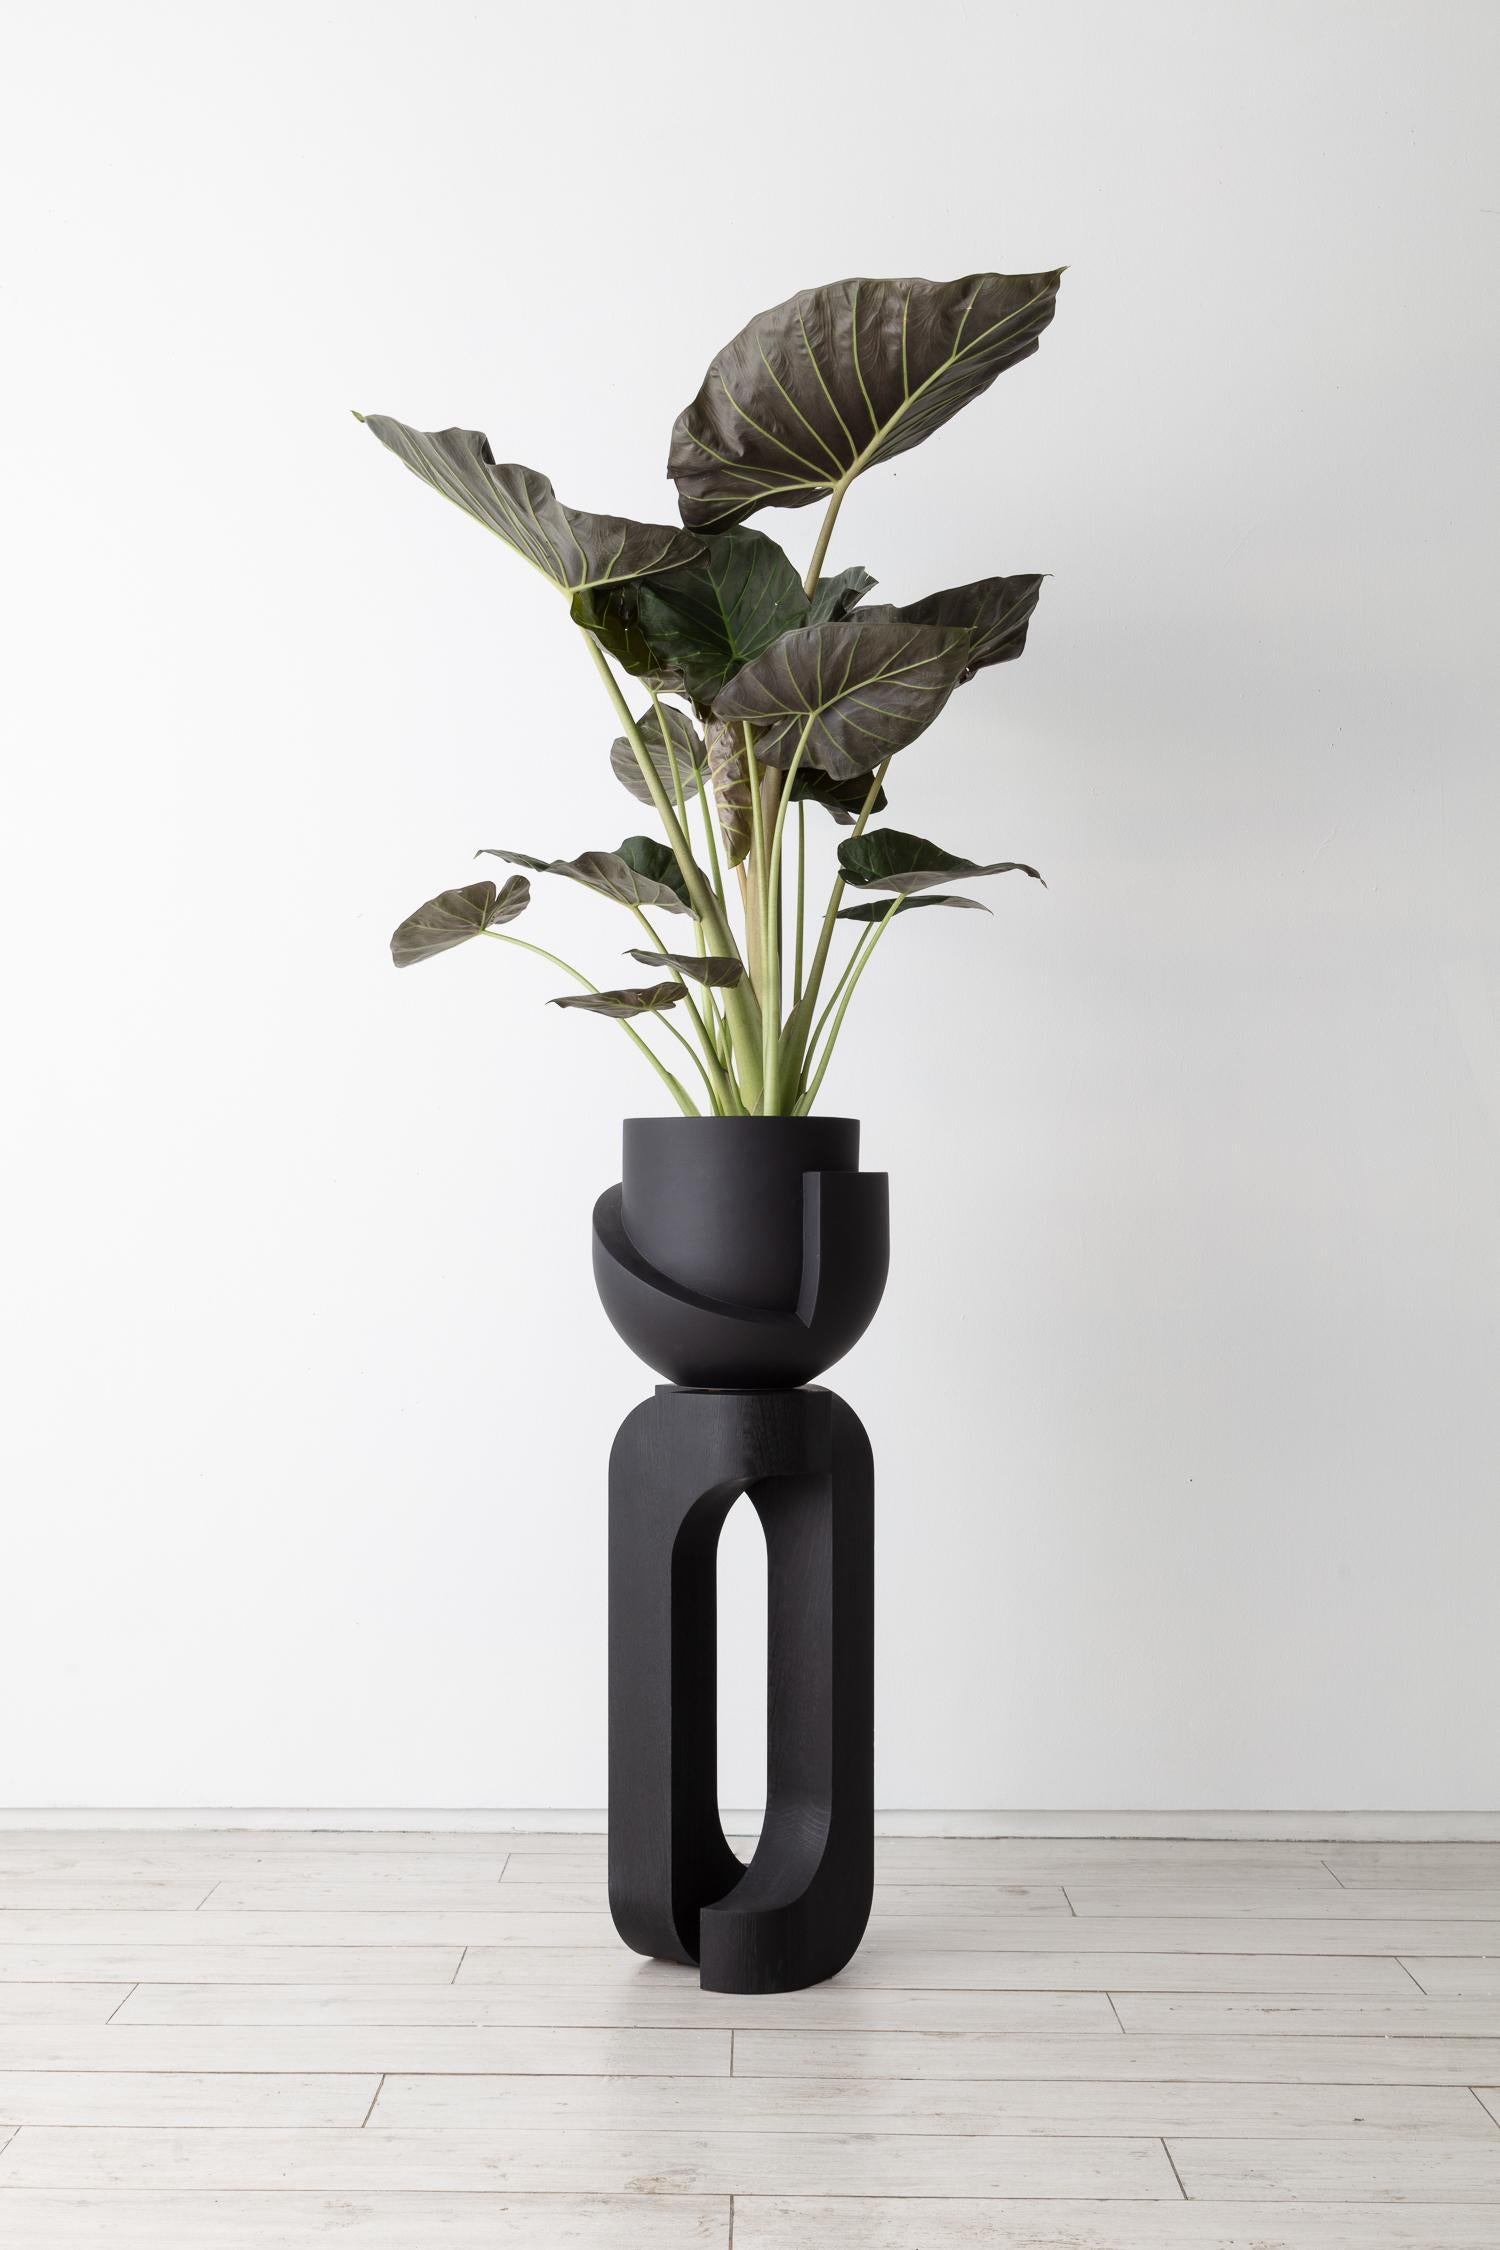 Vayu Coal mit skulpturalem Sockel.

Massiver Pflanzenständer aus Eiche, handgefertigt in Brooklyn von Joel Seigle, gepaart mit unserem Coal Vayu Planter.

MATERIALIEN: Gefäß Steingut, Sockel Eiche massiv

Jeder Ständer wird auf Bestellung